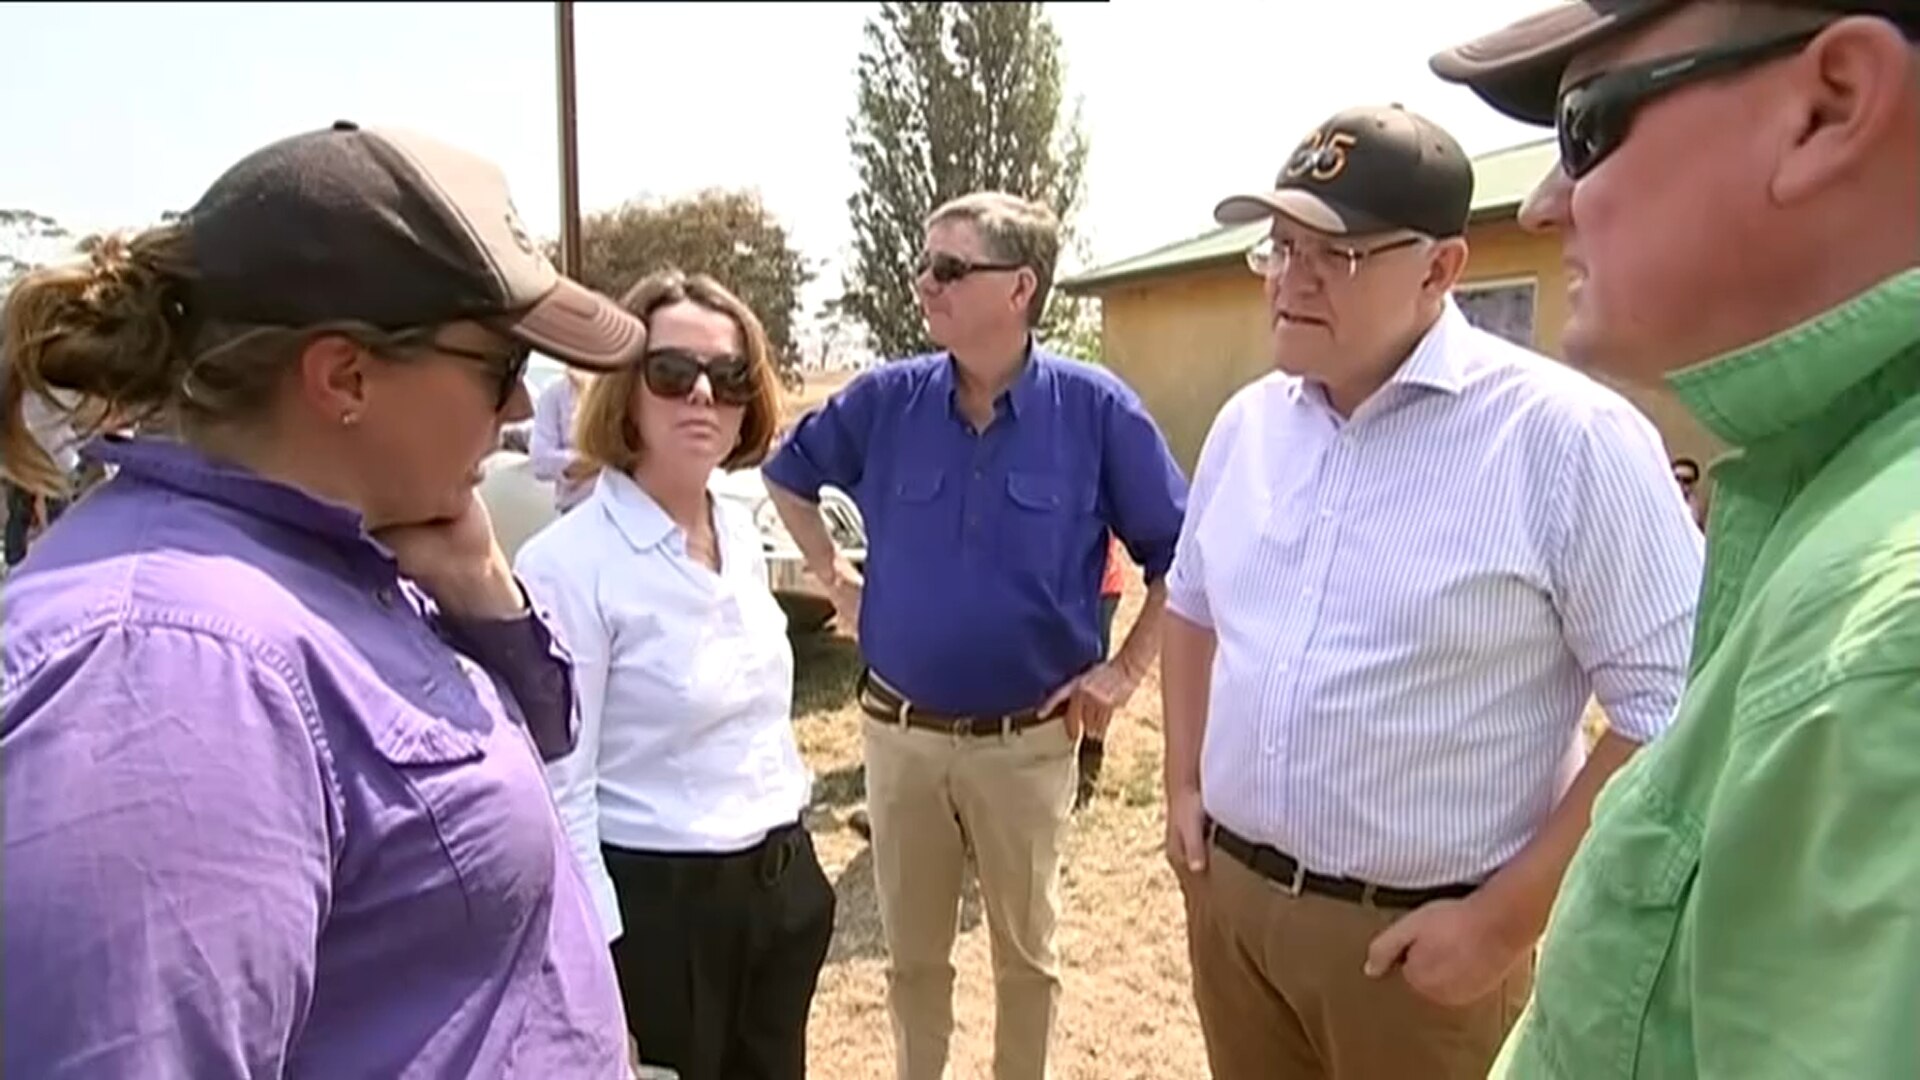 澳大利亚总理到访灾区误称无人员伤亡 当地居民急纠正